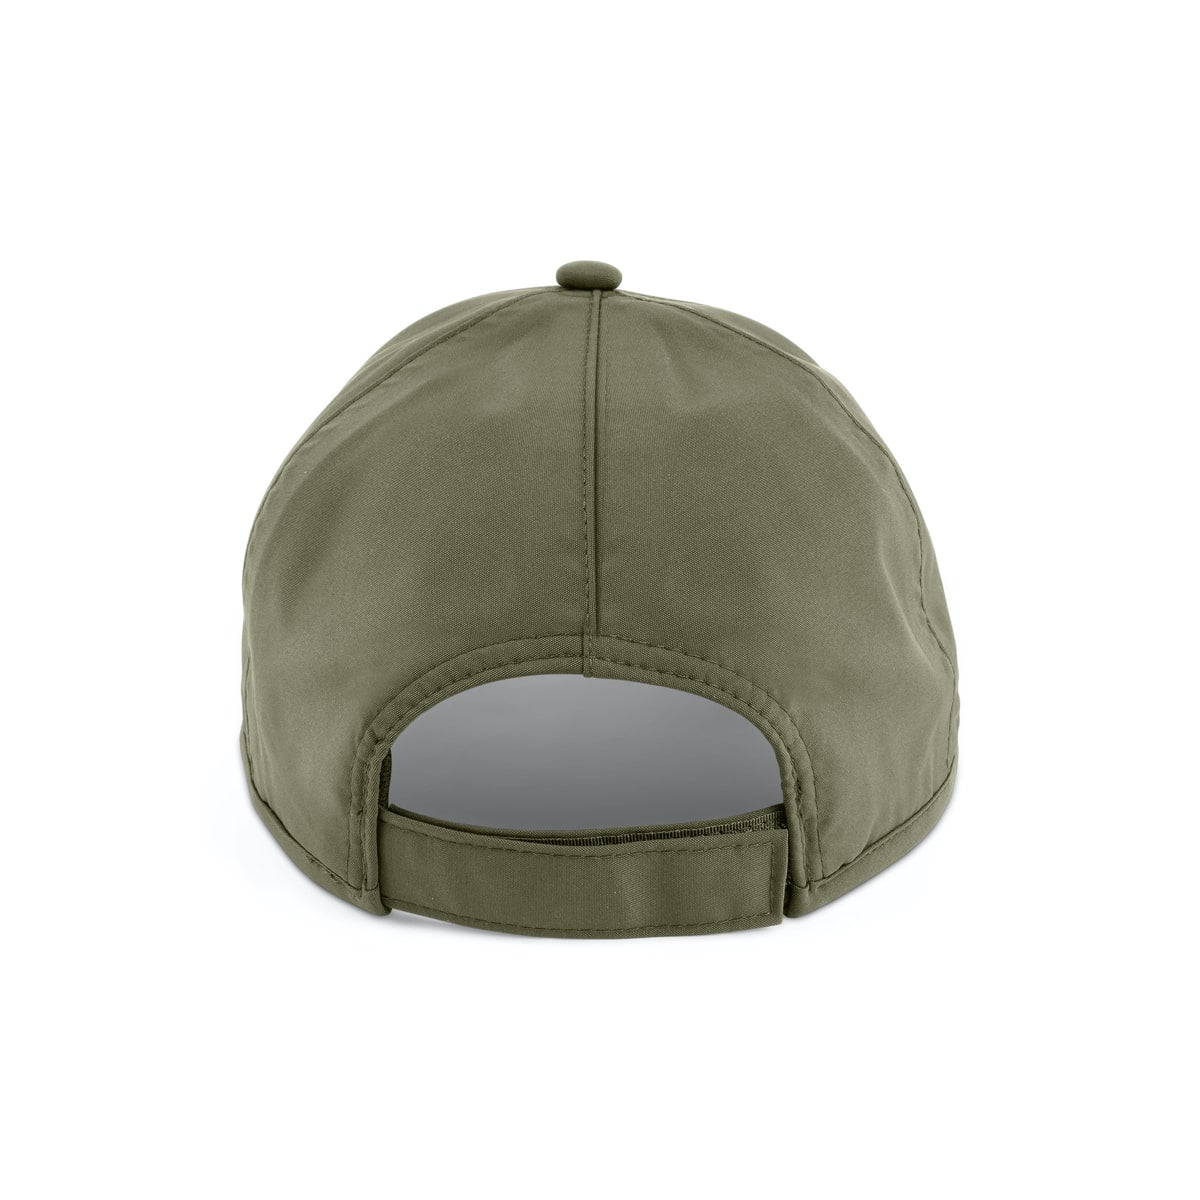 Korum olive waterproof cap - pet